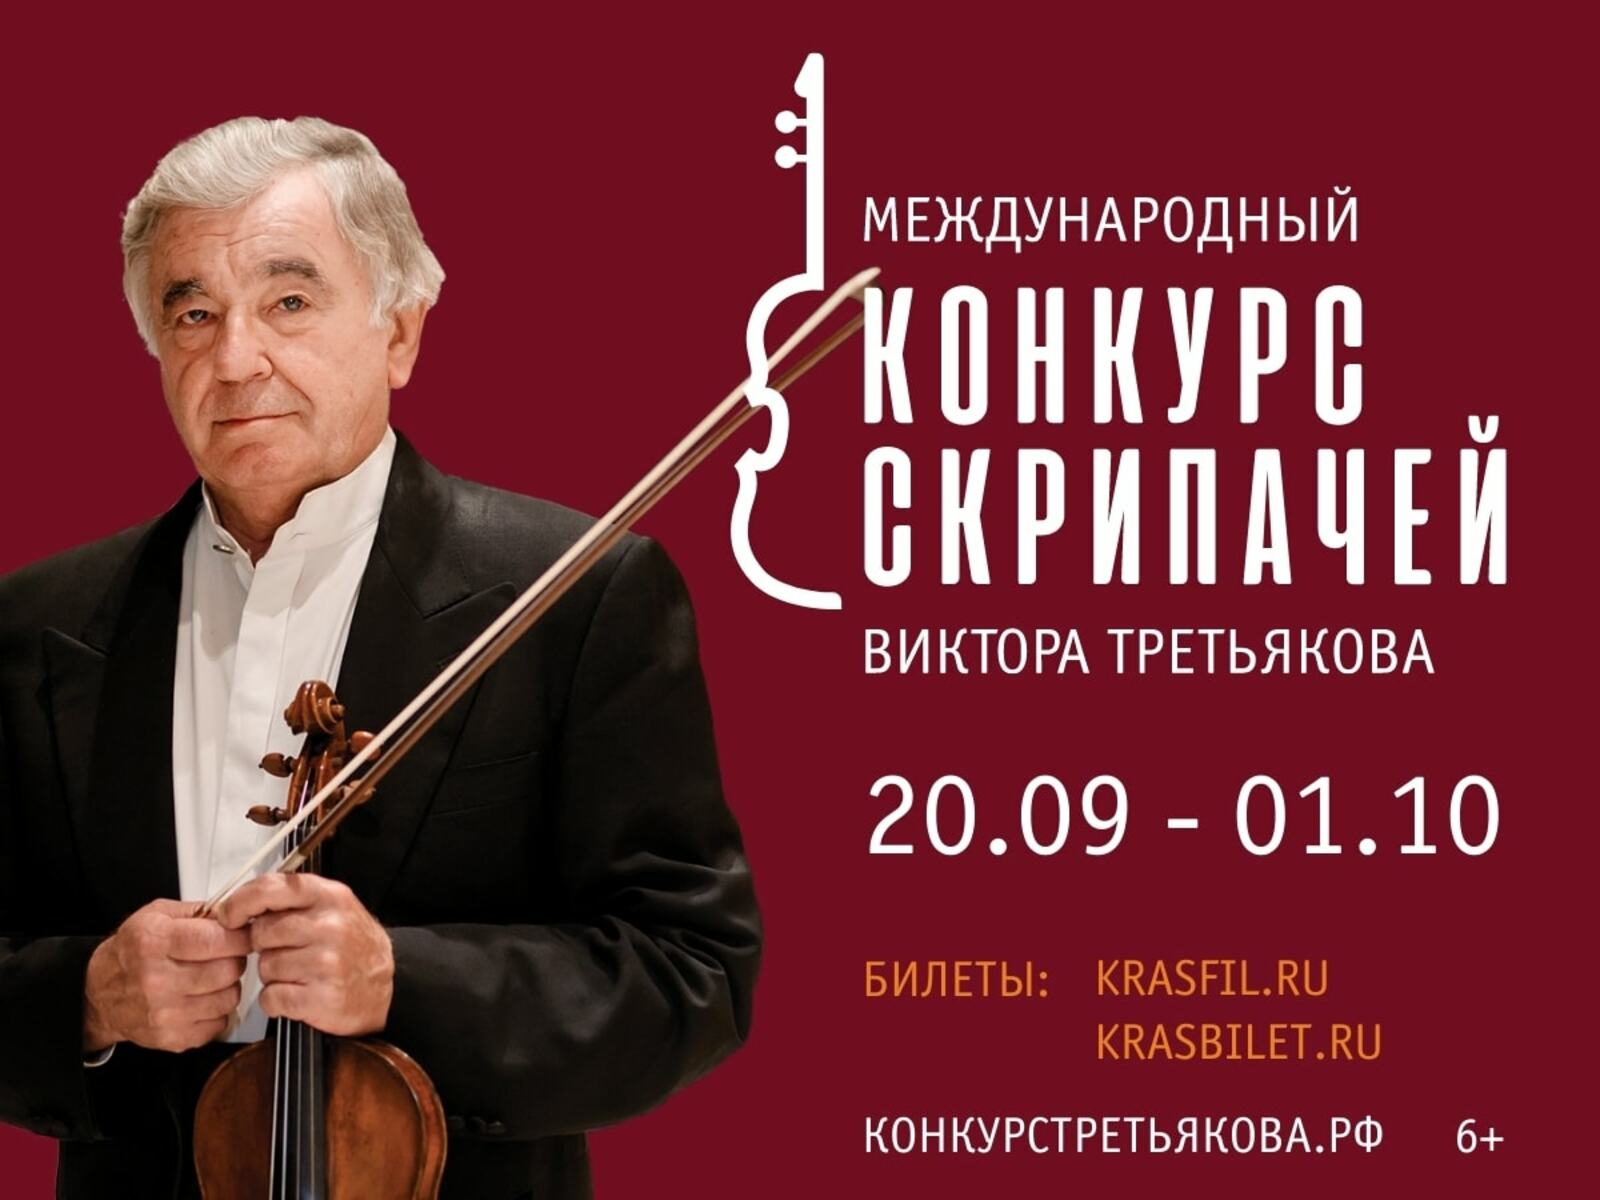 В Красноярске открывается II Международный конкурс скрипачей Виктора Третьякова